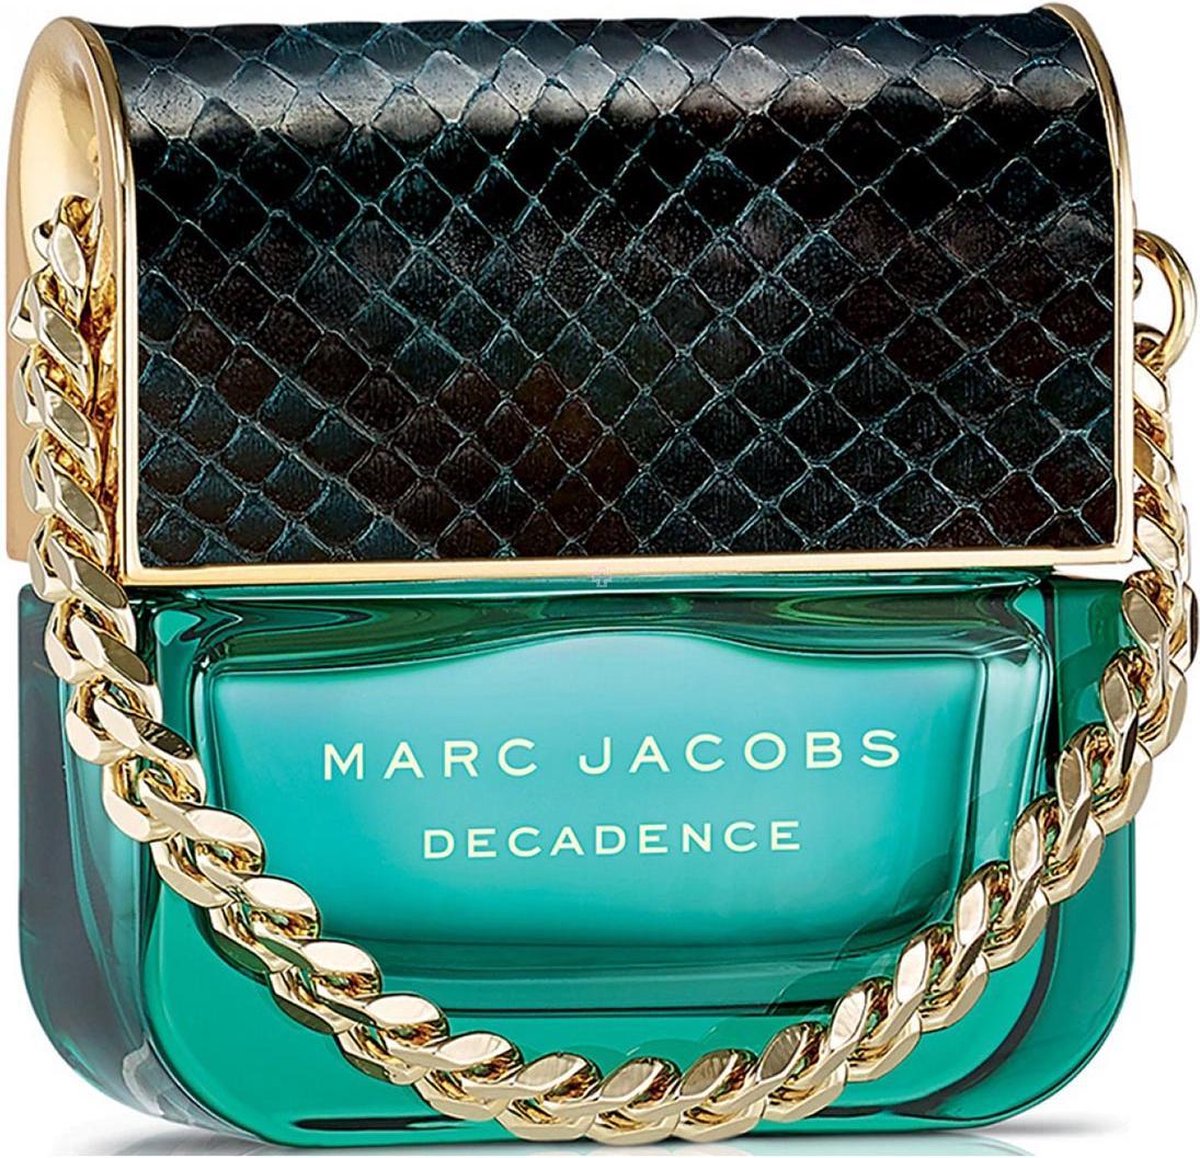 Marc Jacobs Decadence 50 ml - Eau de Parfum - Damesparfum - MARC JACOBS